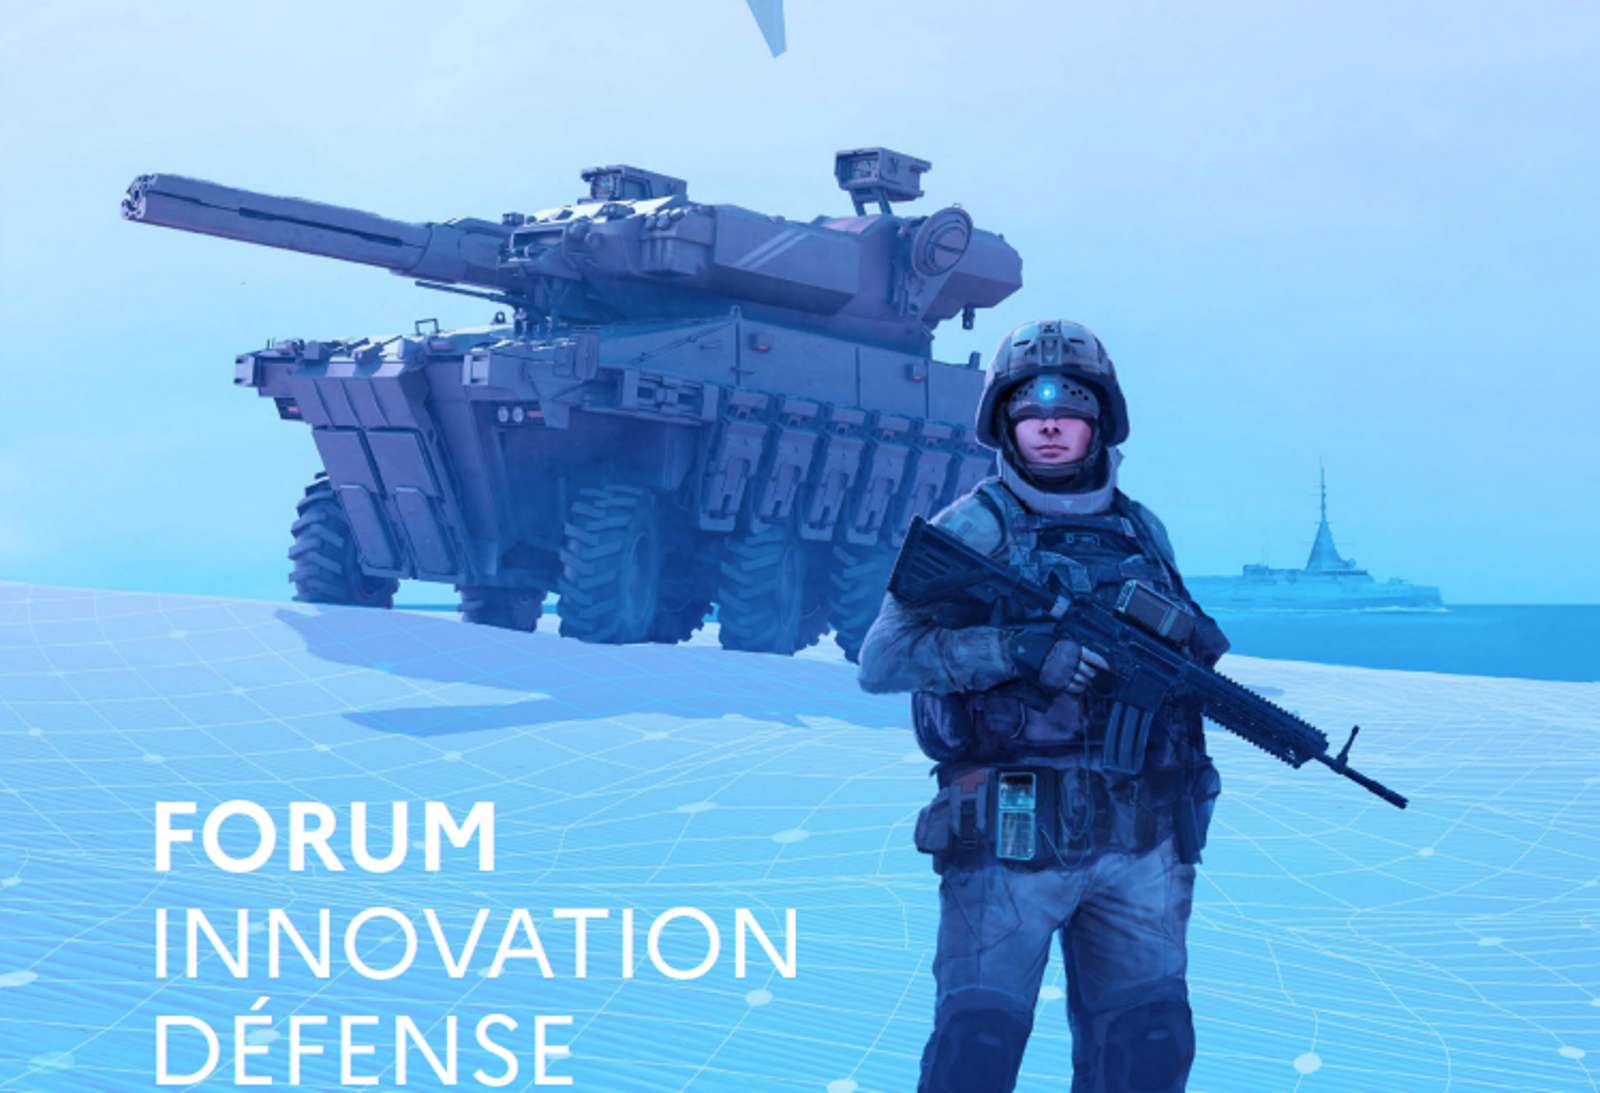 L'armée française présente ses innovations technologiques ce week-end au Forum Innovation Défense